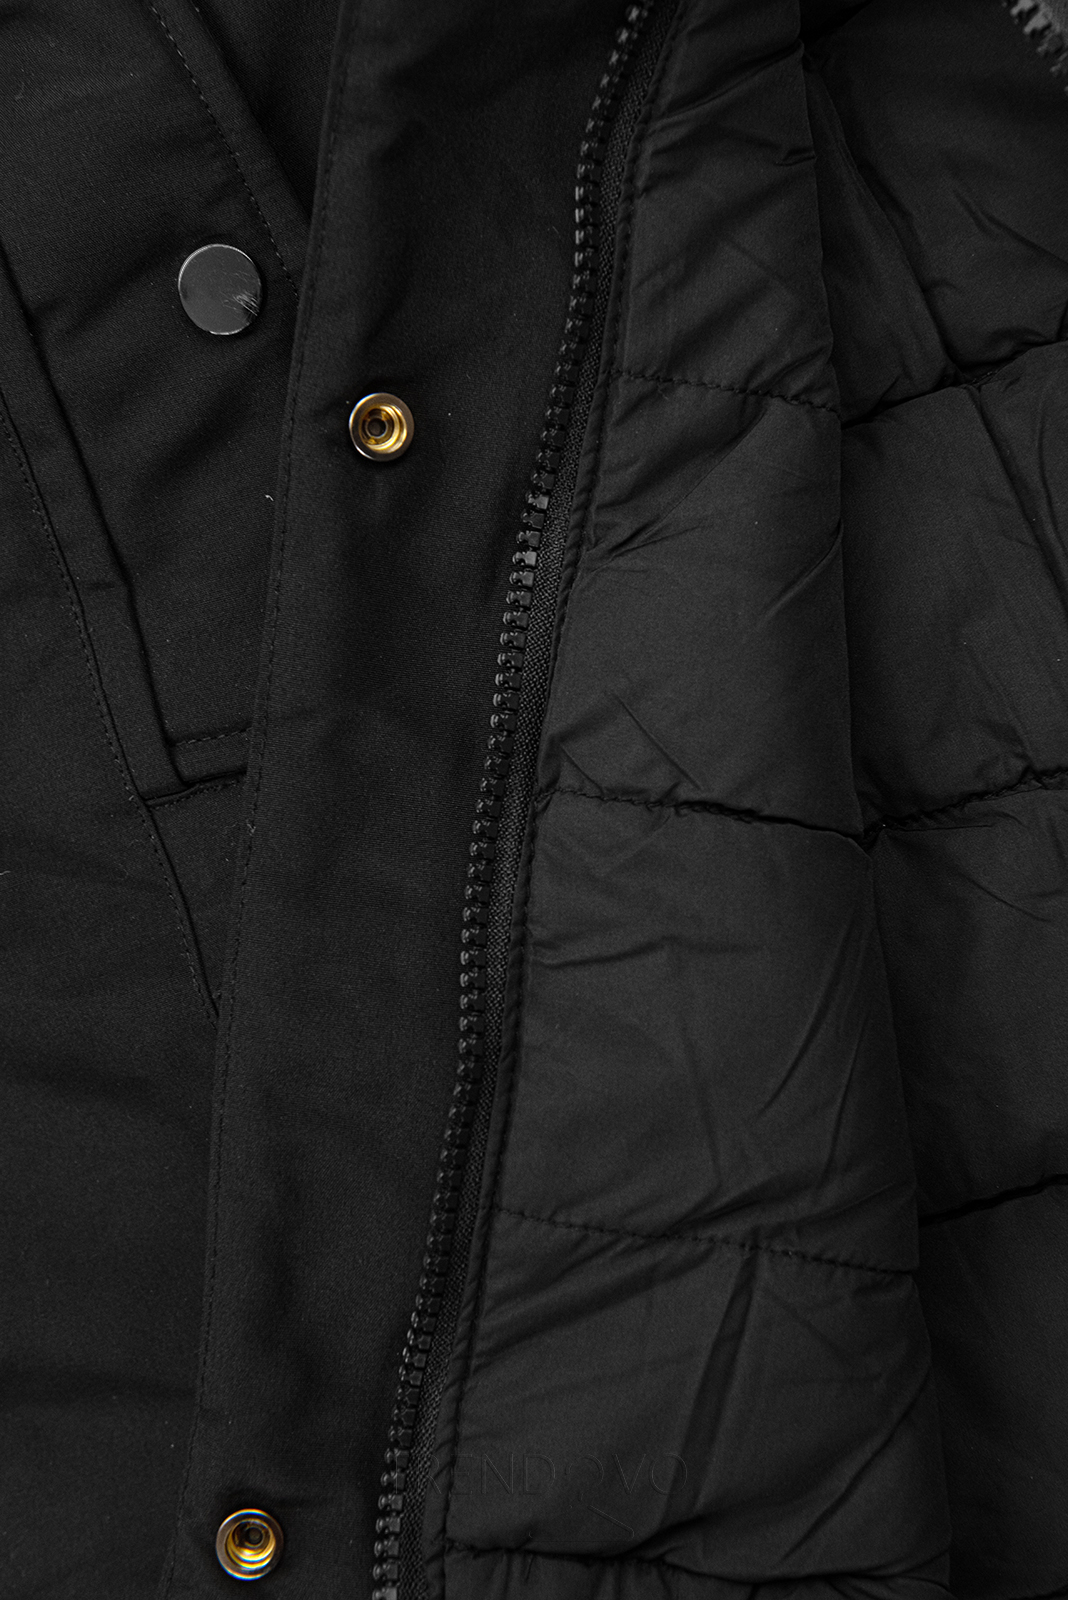 Oboustranná zimní bunda s kožešinou černá